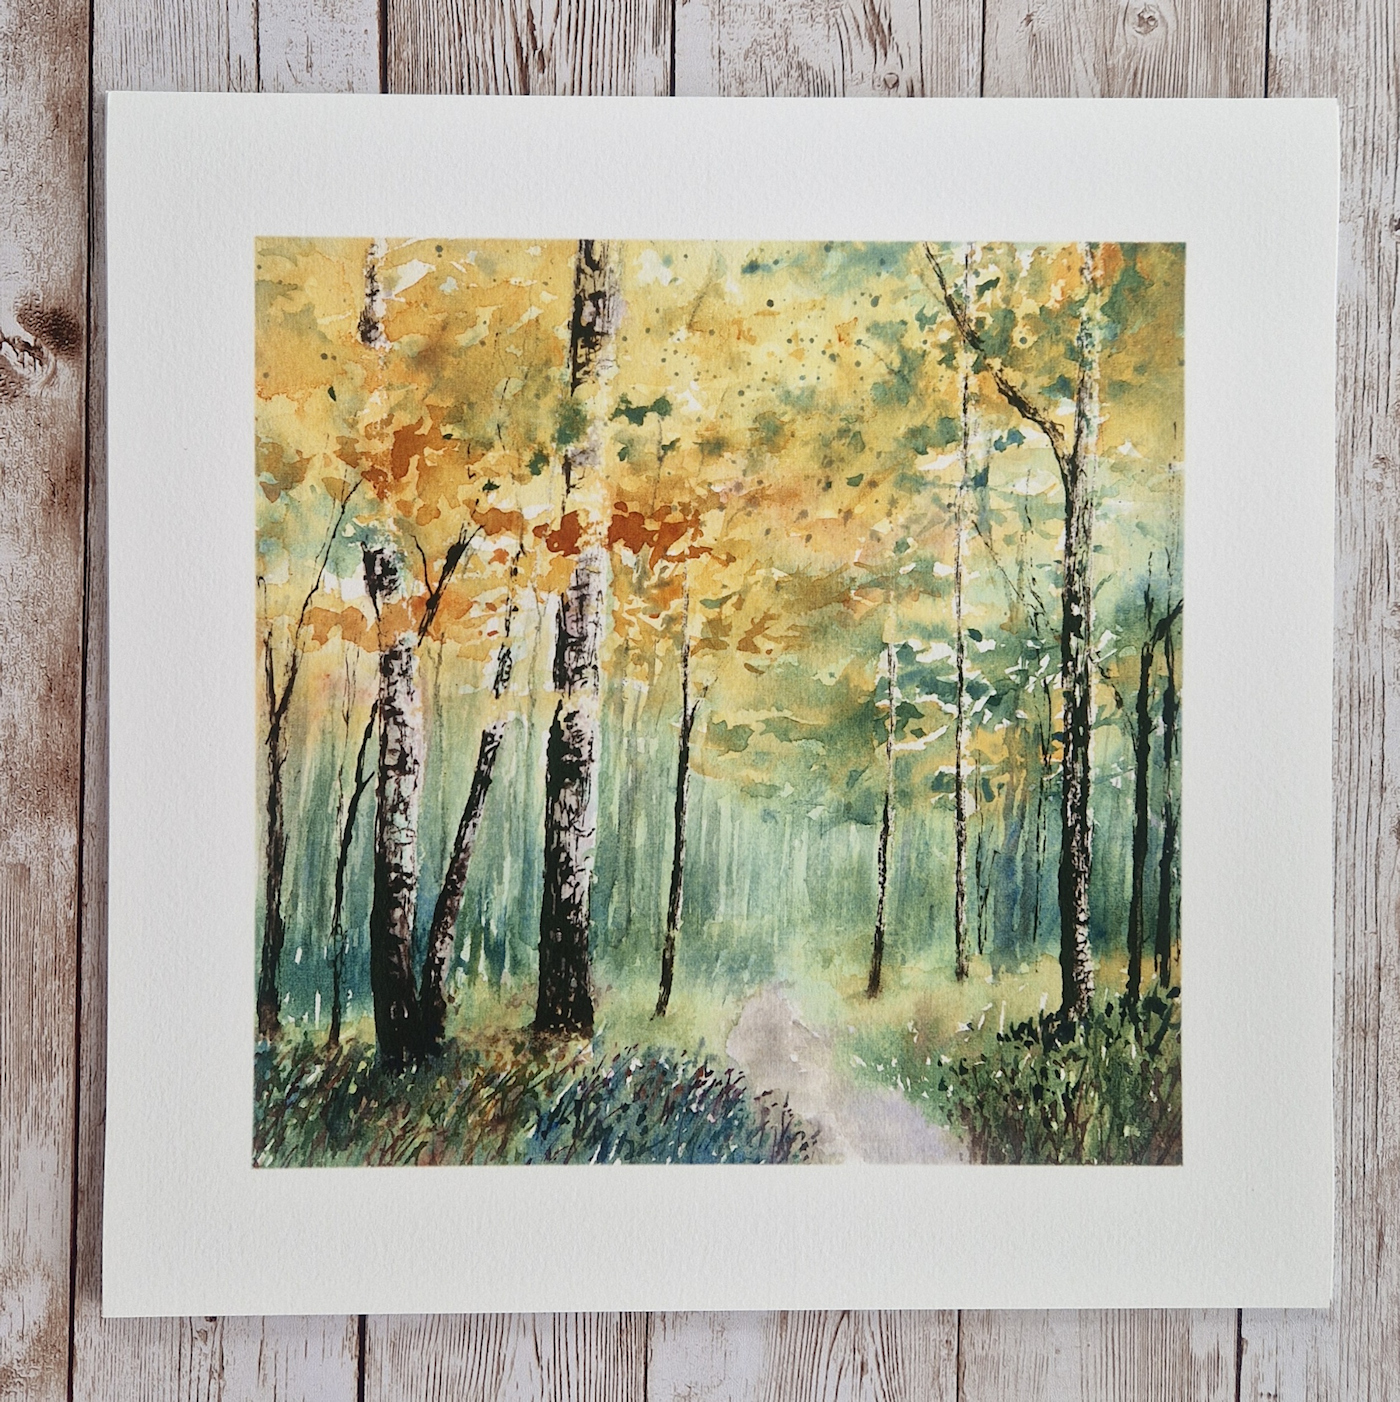 Print of a path through an autumn woodland